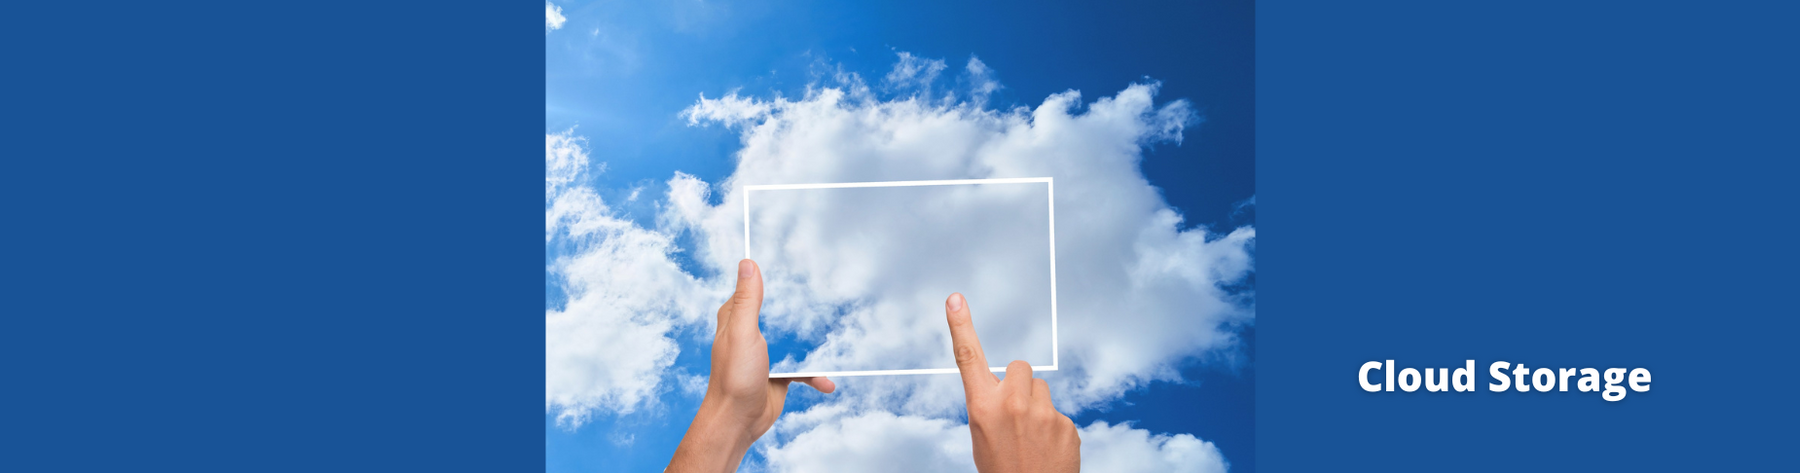 Almacenamiento en la nube: Cómo mantener tus recuerdos a salvo